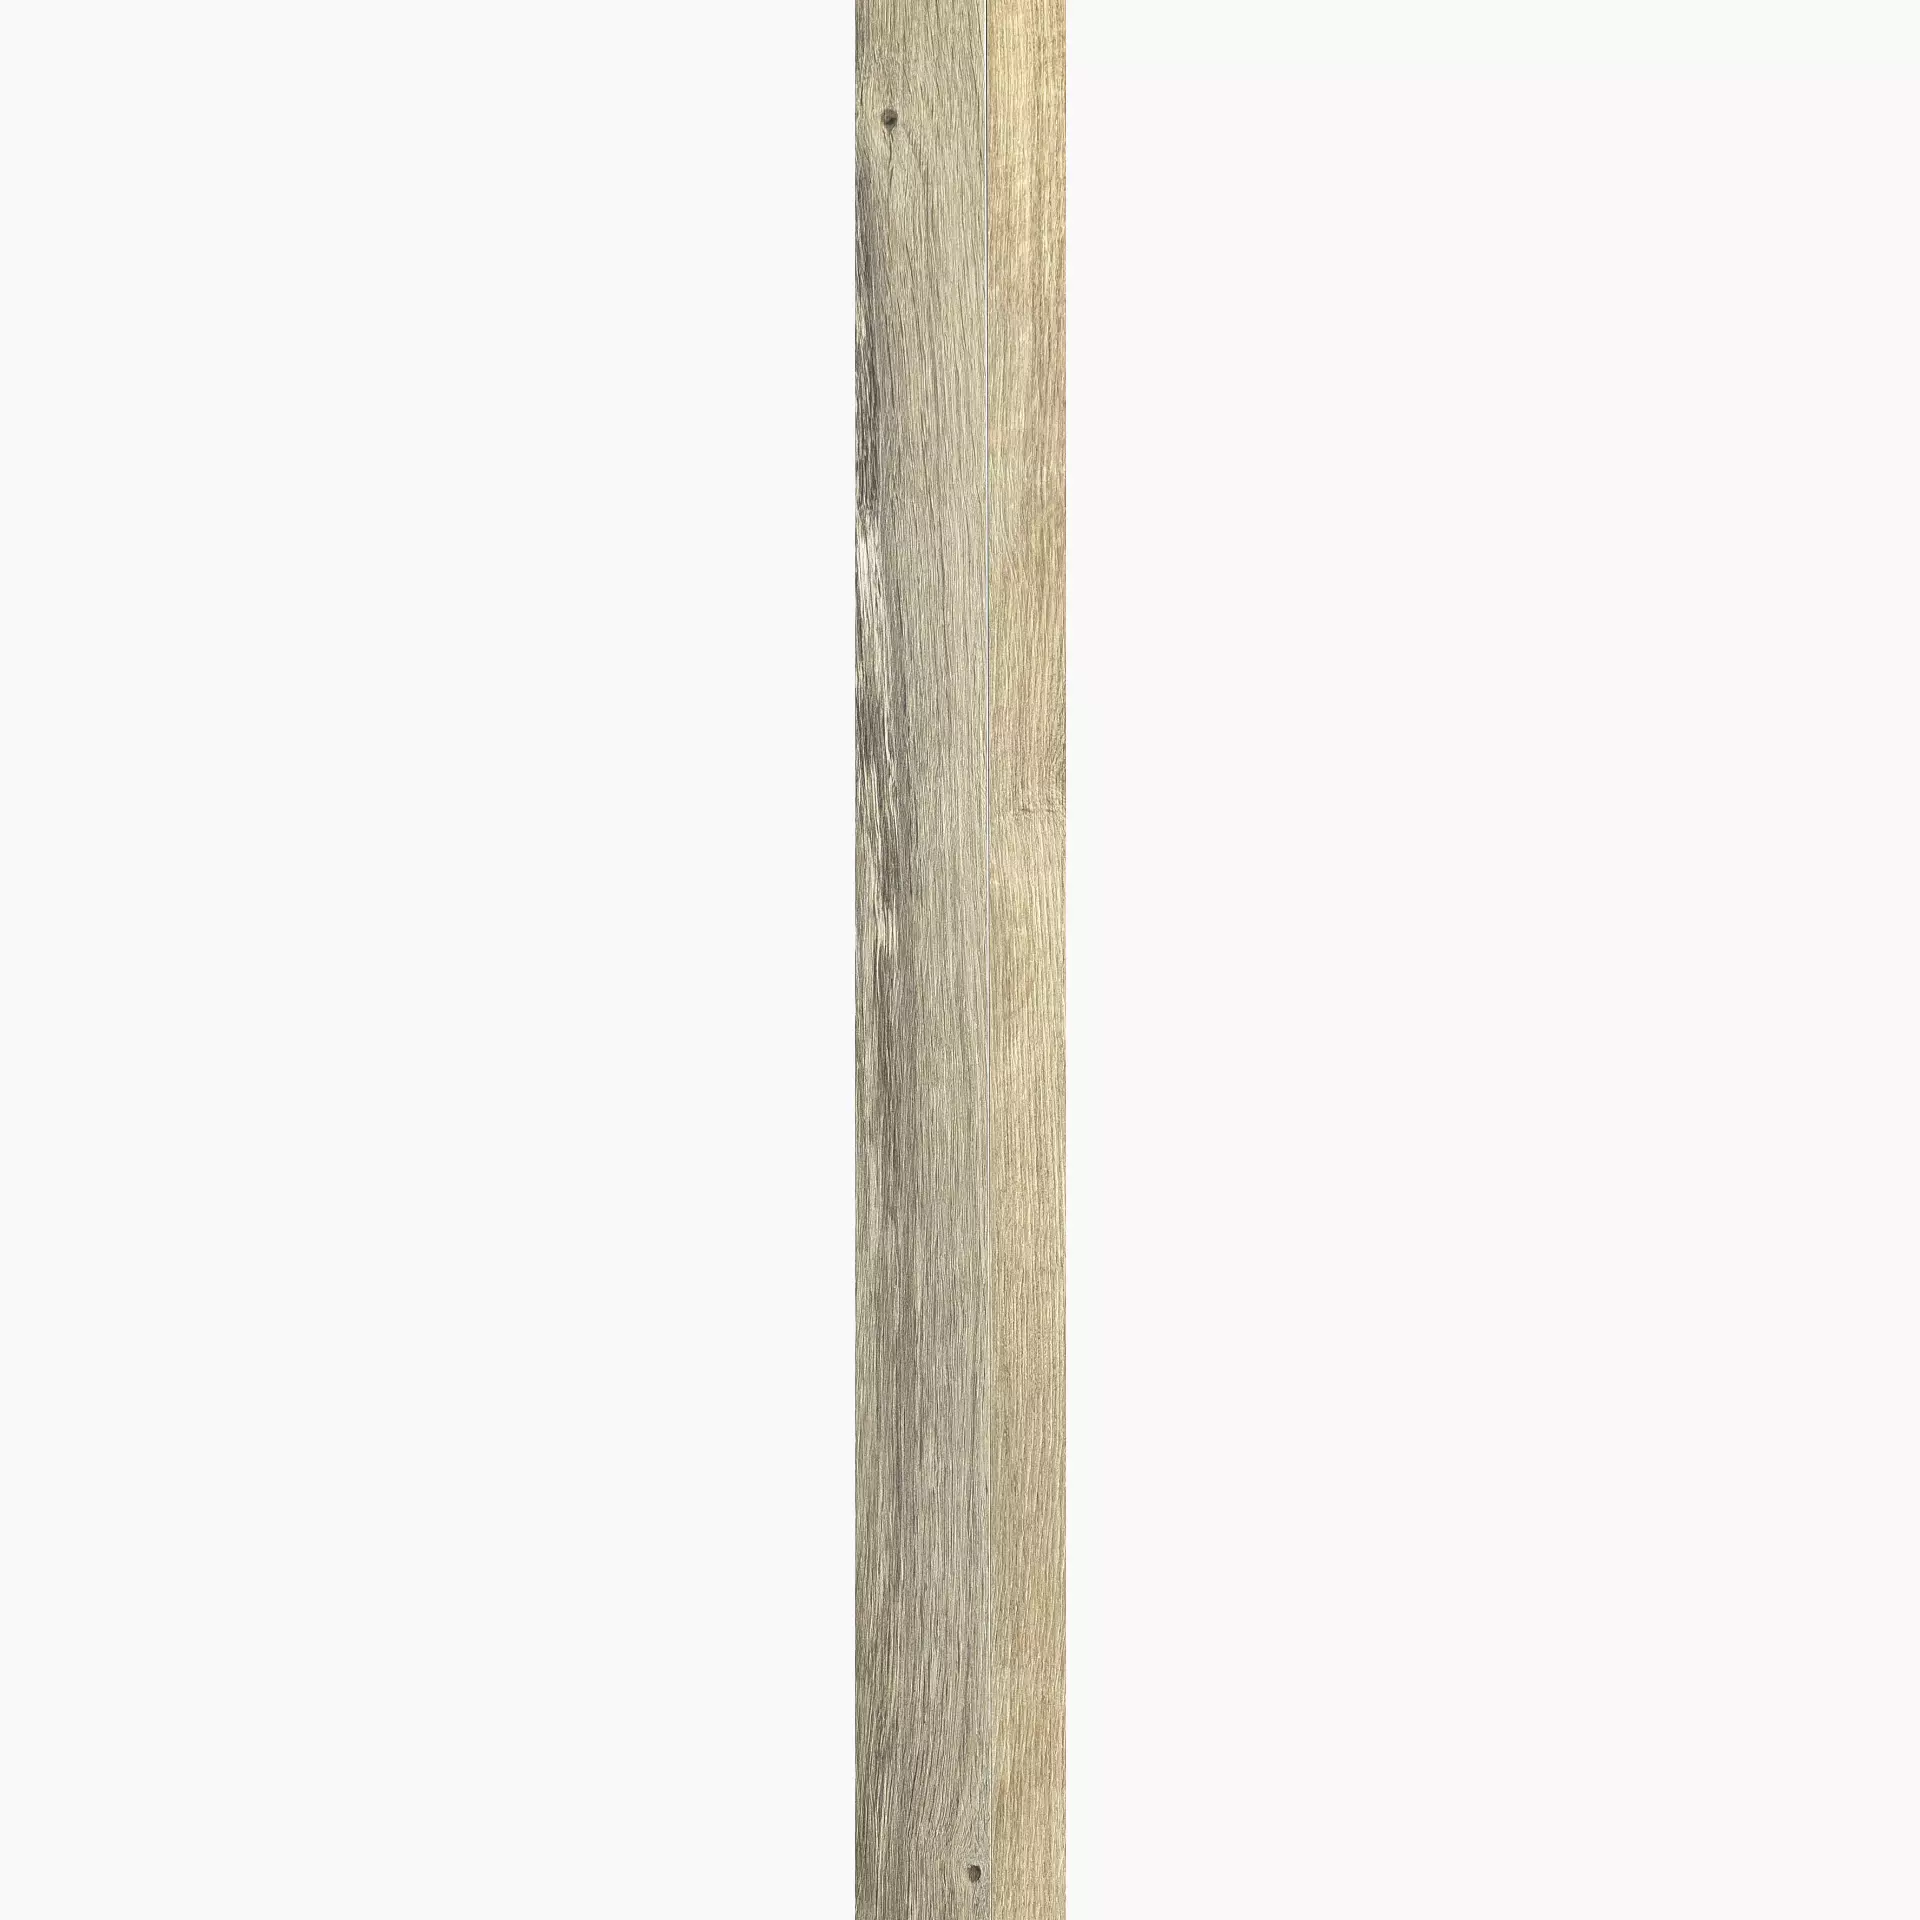 Florim Planches De Rex Miele Naturale – Matt 755699 20x180cm rectified 9mm